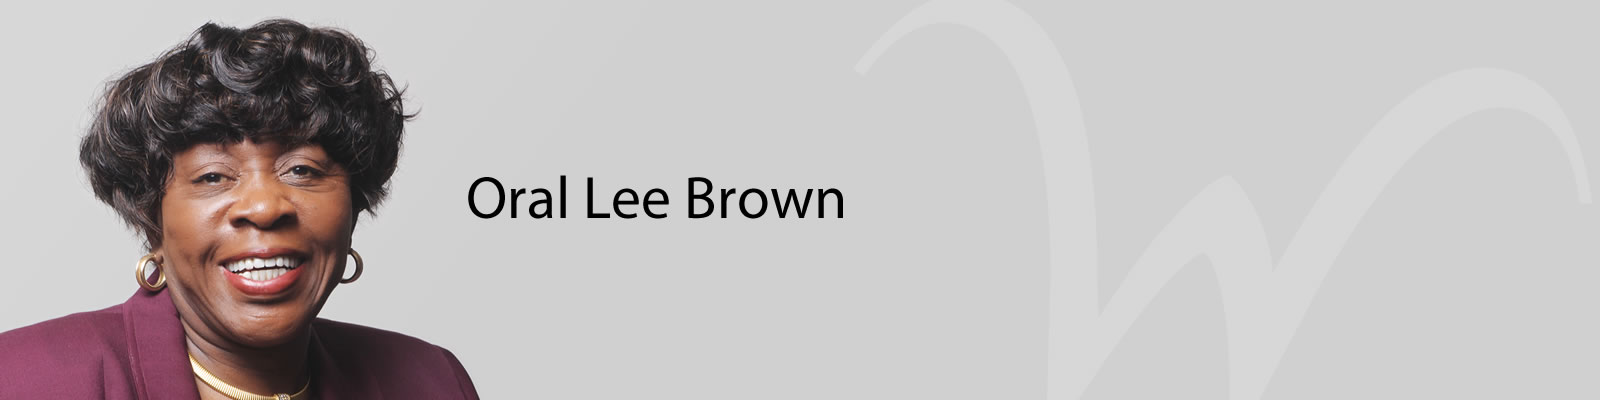 Image of Oral Lee Brown